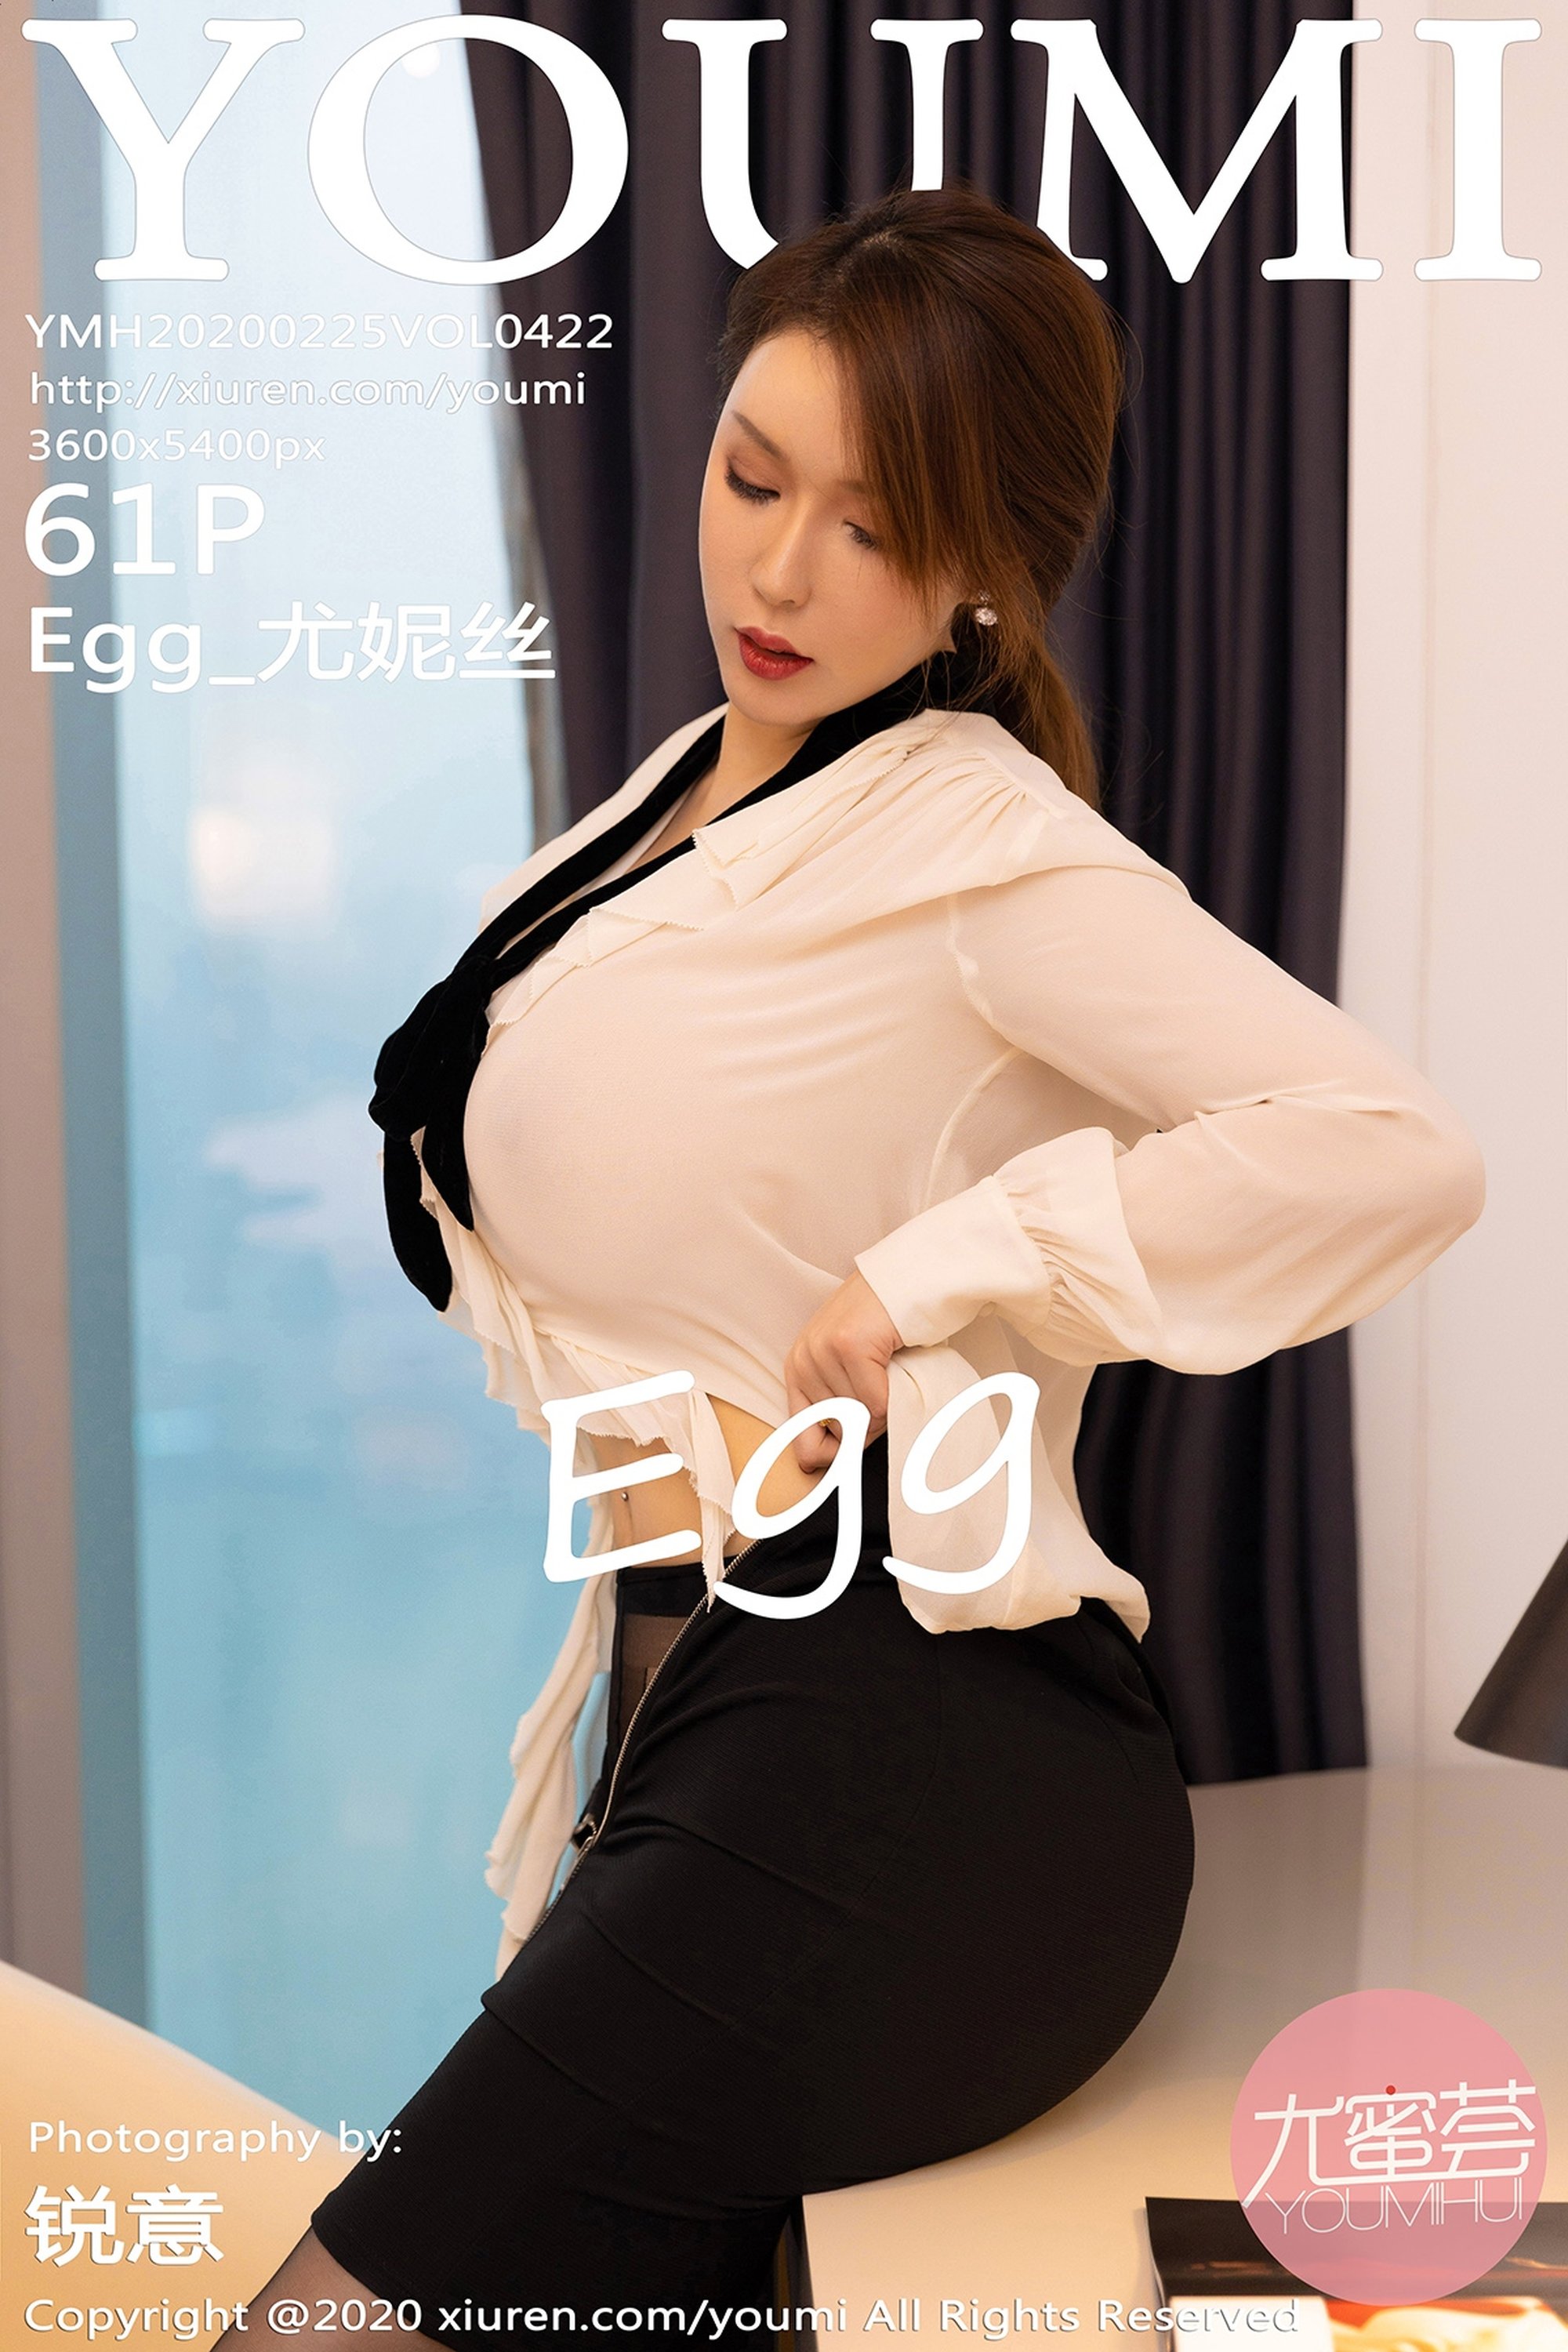 【YOUMI尤蜜荟系列】2020.02.25 Vol.422 Egg_尤妮絲 性感寫真【62P】 - 貼圖 - 絲襪美腿 -